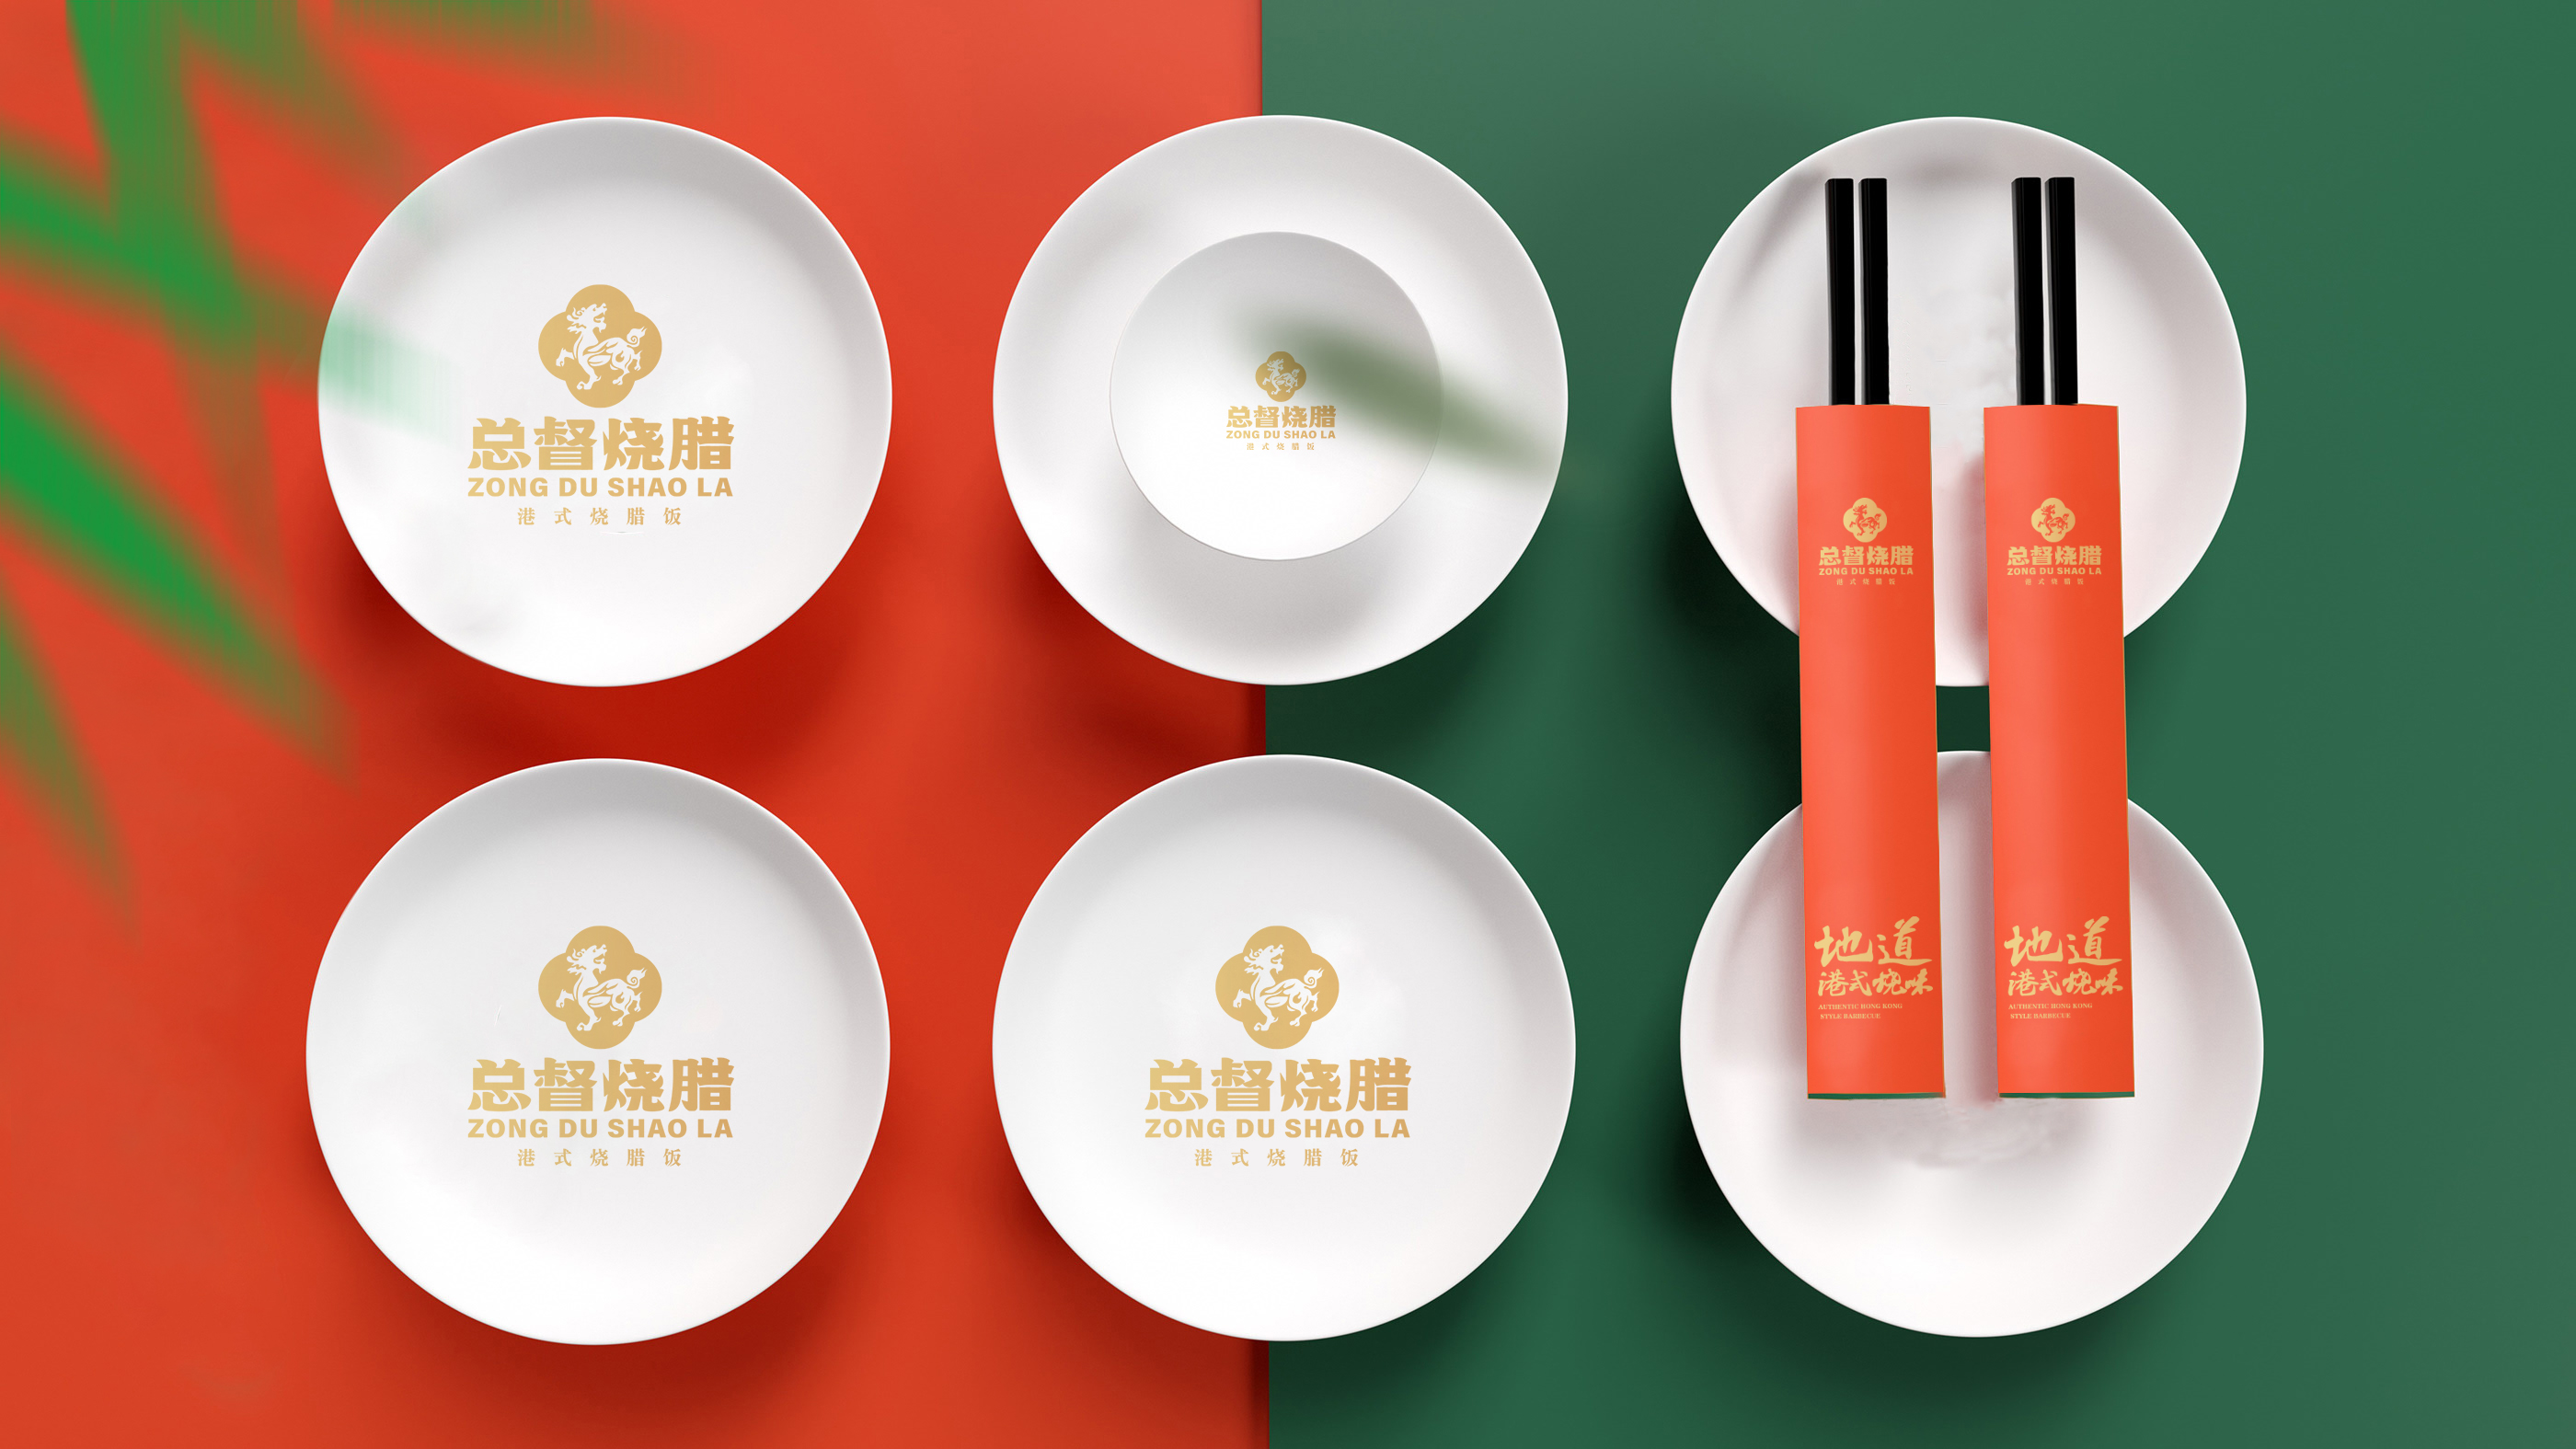 总督烧腊餐饮品牌logo设计港式烧腊广东风味餐饮案例